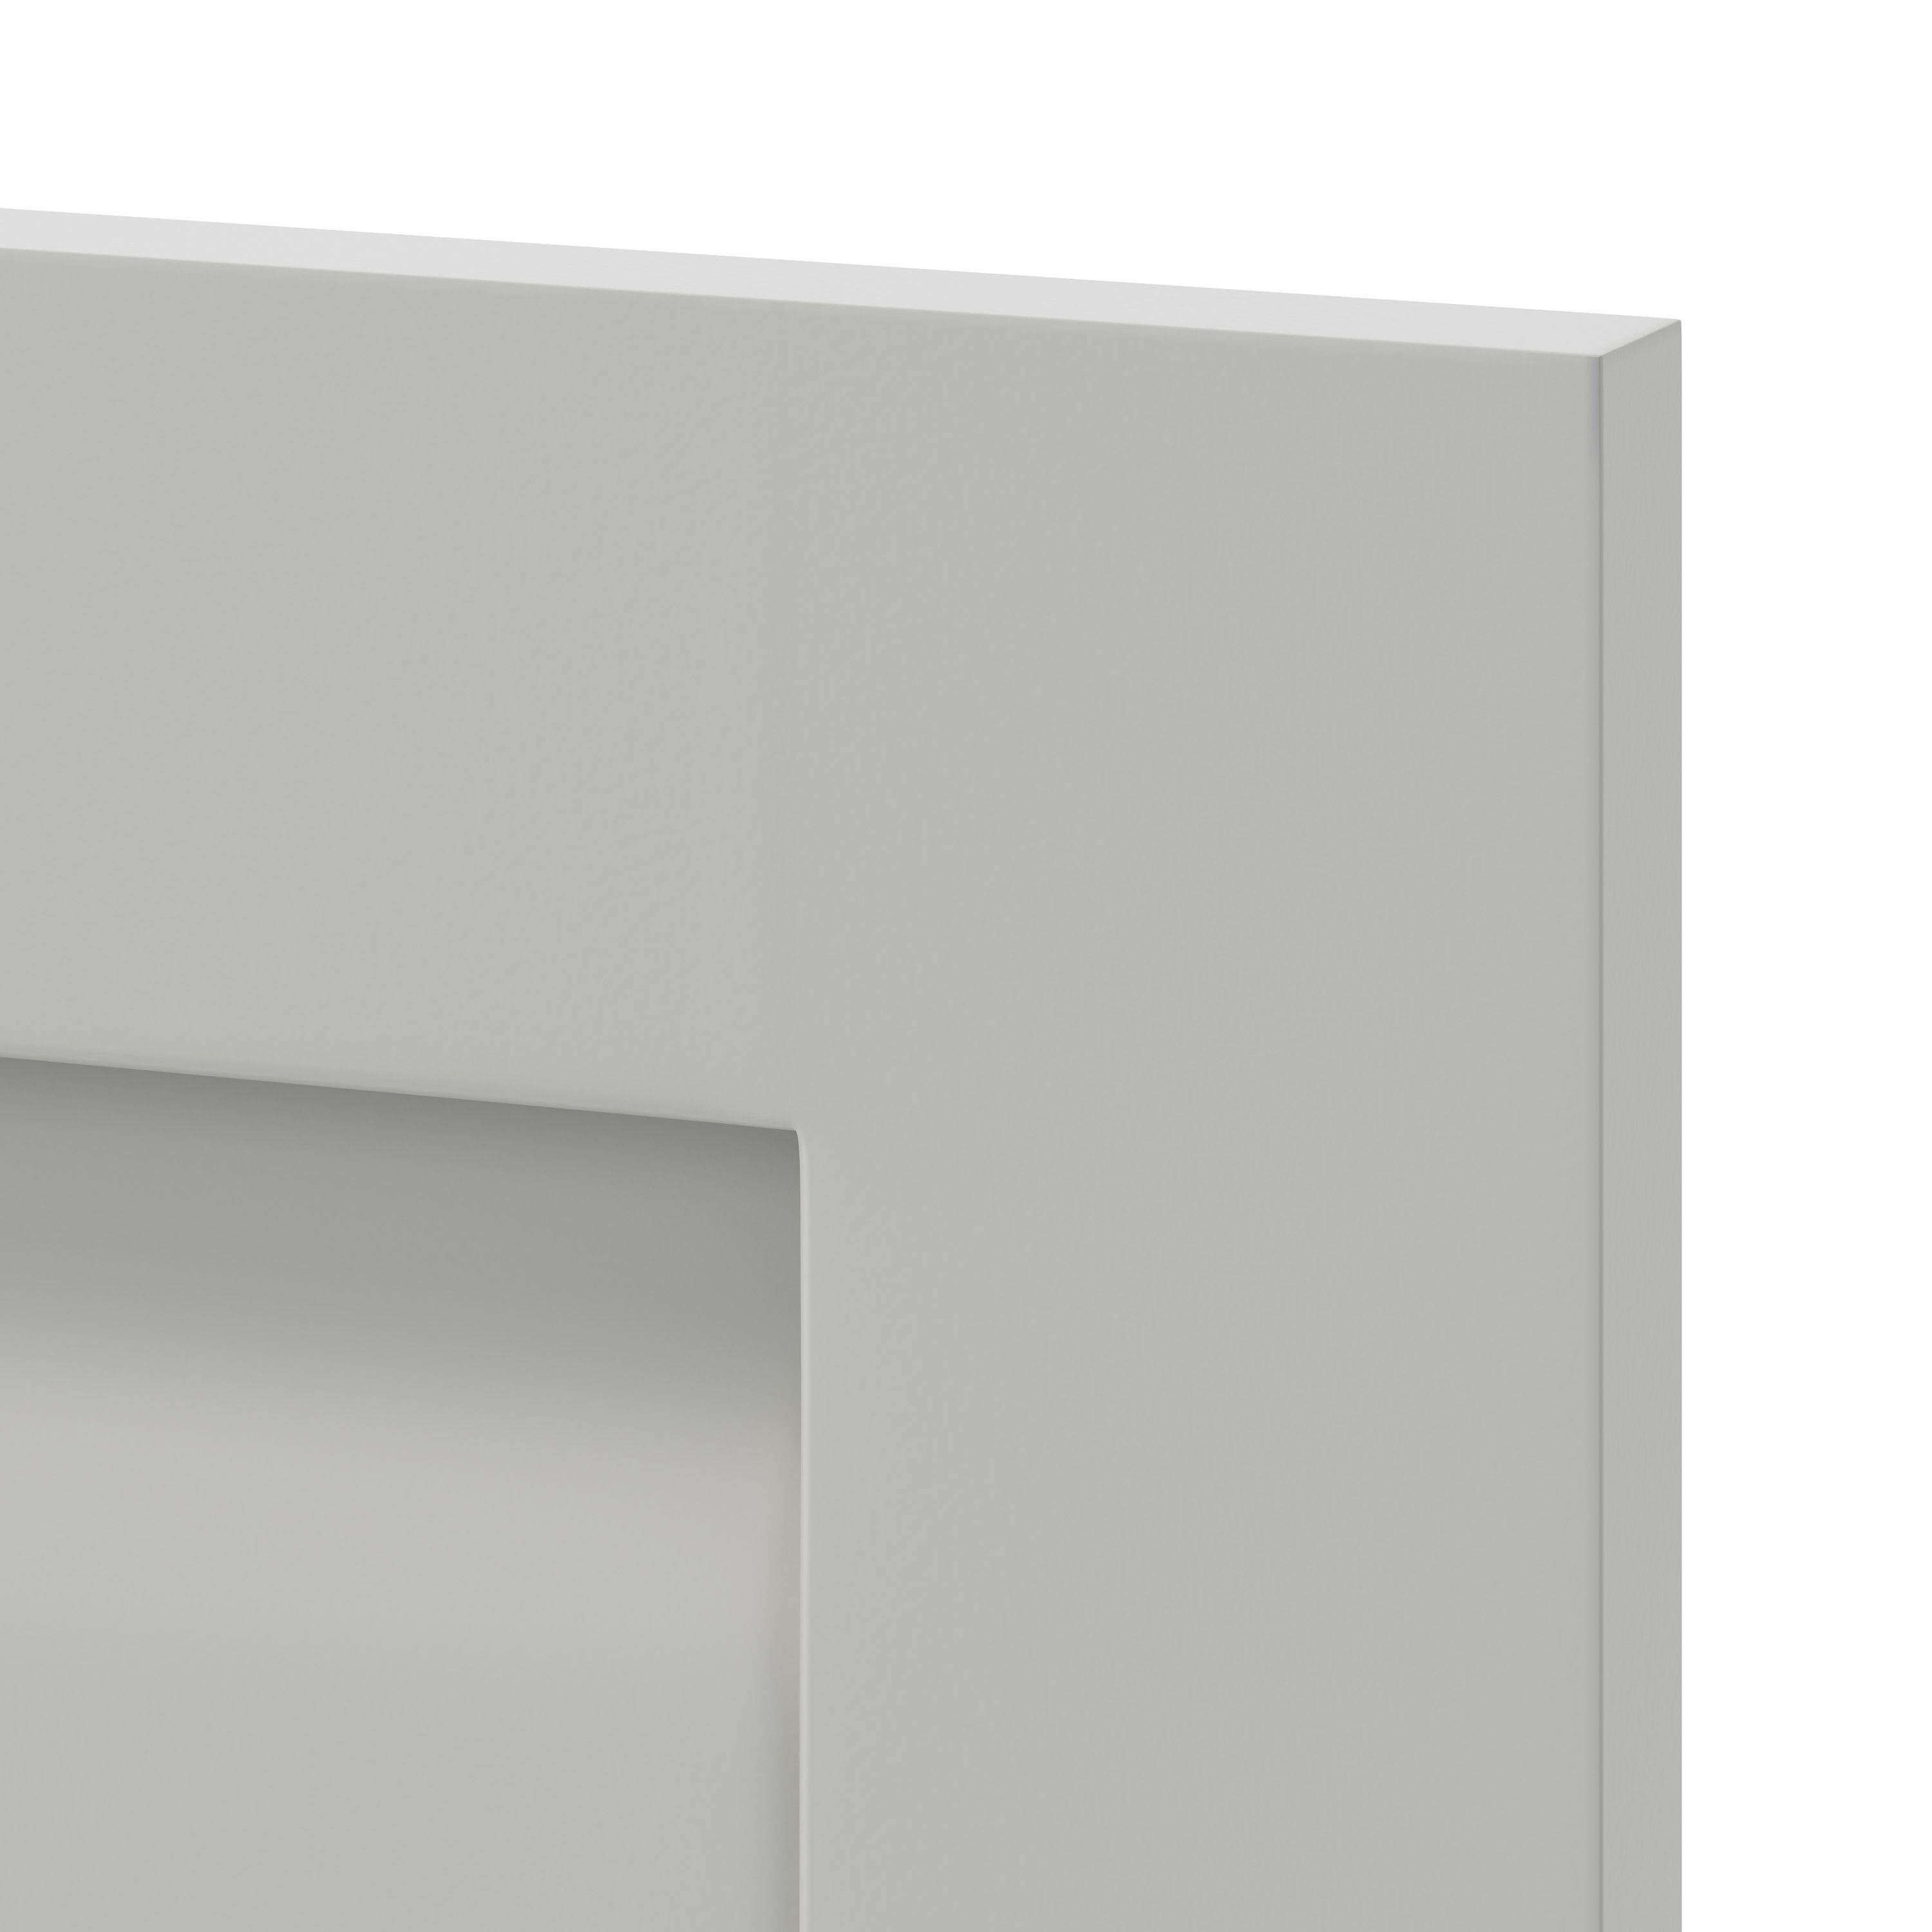 GoodHome Garcinia Matt stone integrated handle shaker Drawer front, bridging door & bi fold door, (W)1000mm (H)356mm (T)20mm